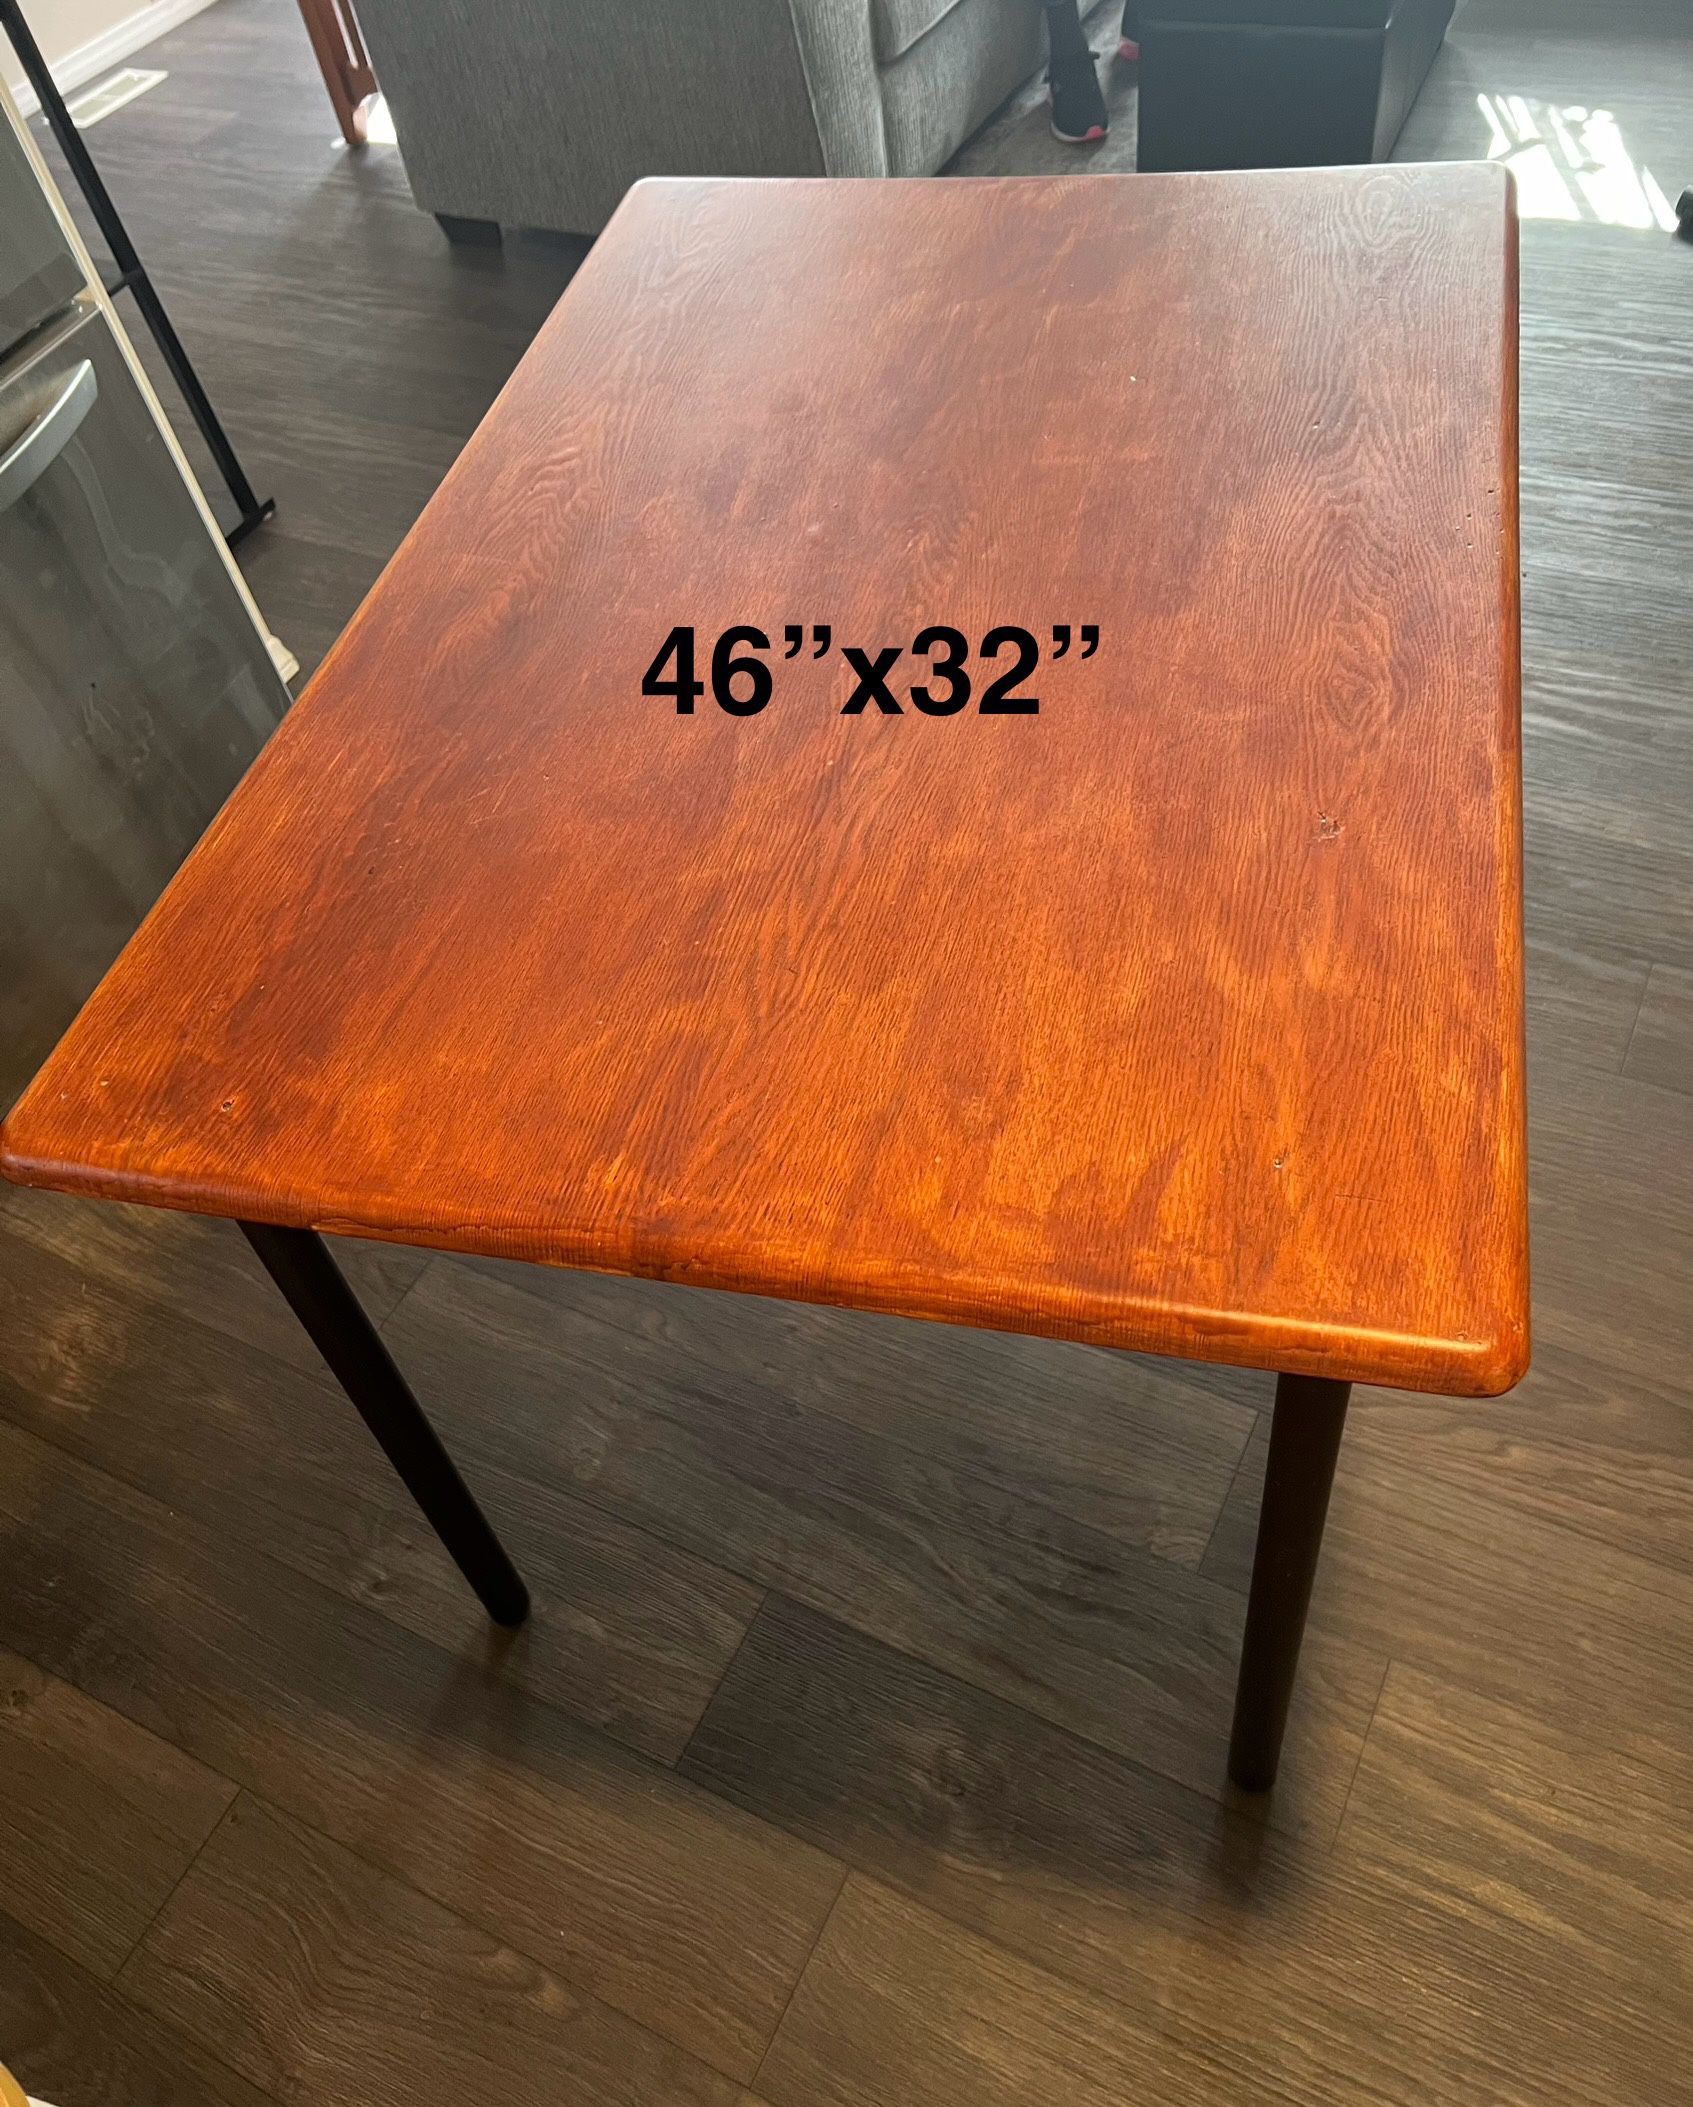 Kitchen Table 46” x 32”  x  30 1/2” tall